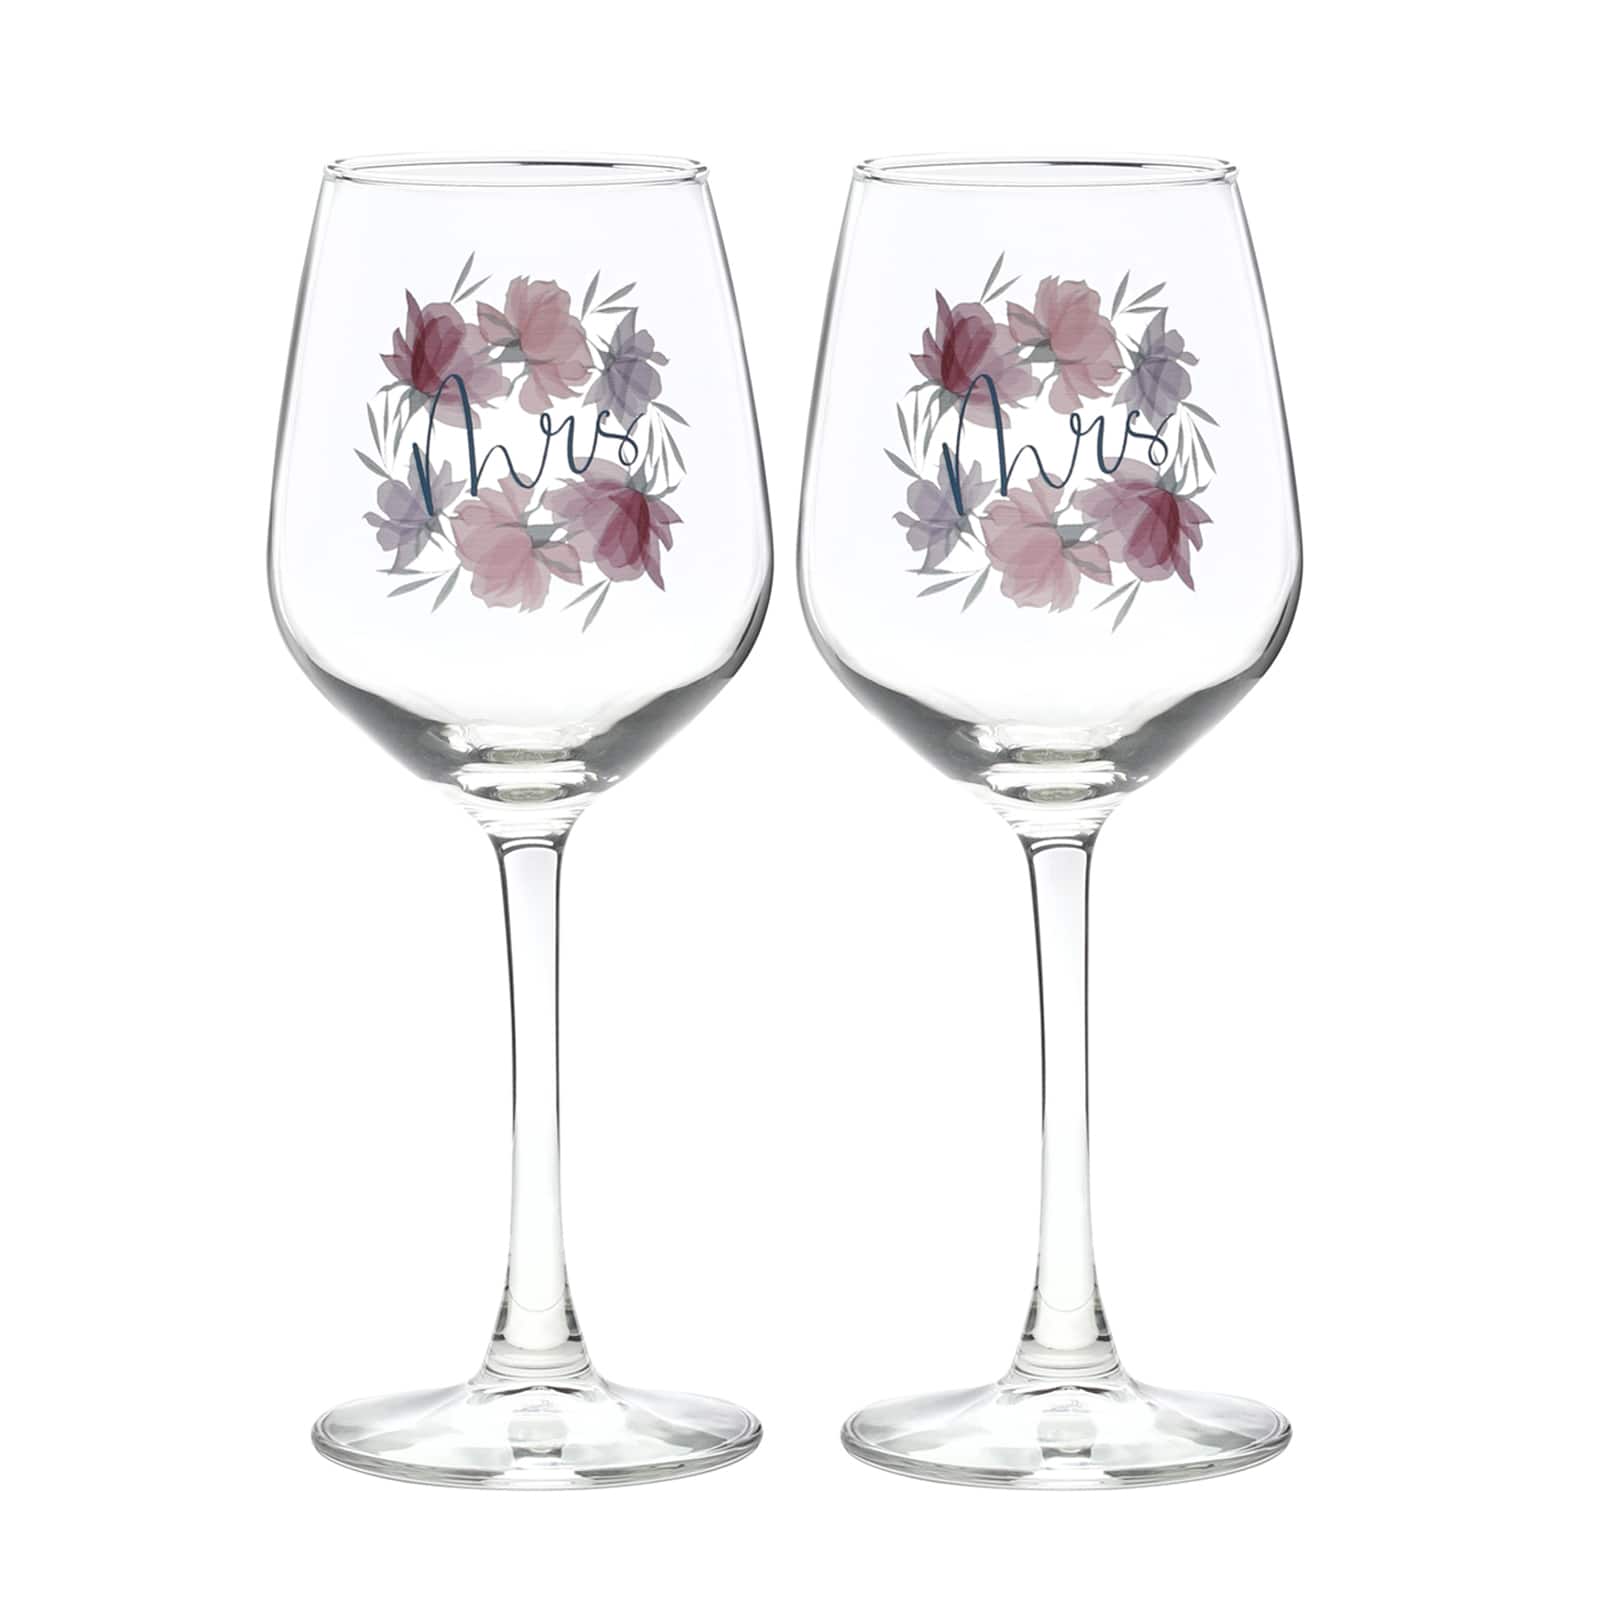 12oz. Mrs. &#x26; Mrs. Floral Wine Glass Set